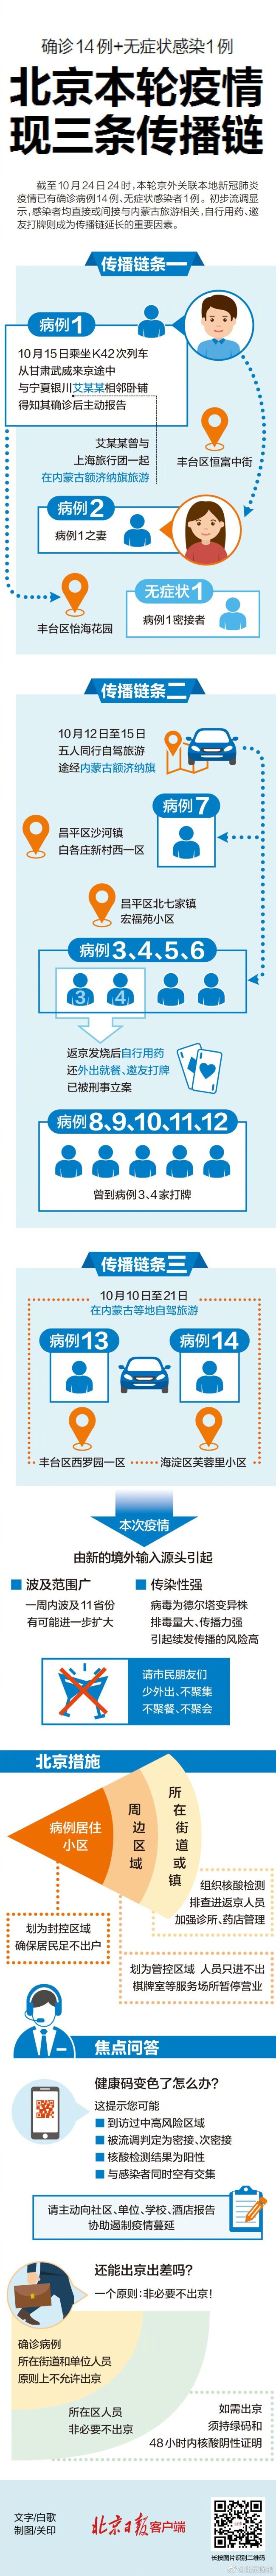 北京已有14例确诊1例无症状 本轮疫情现三条传播链